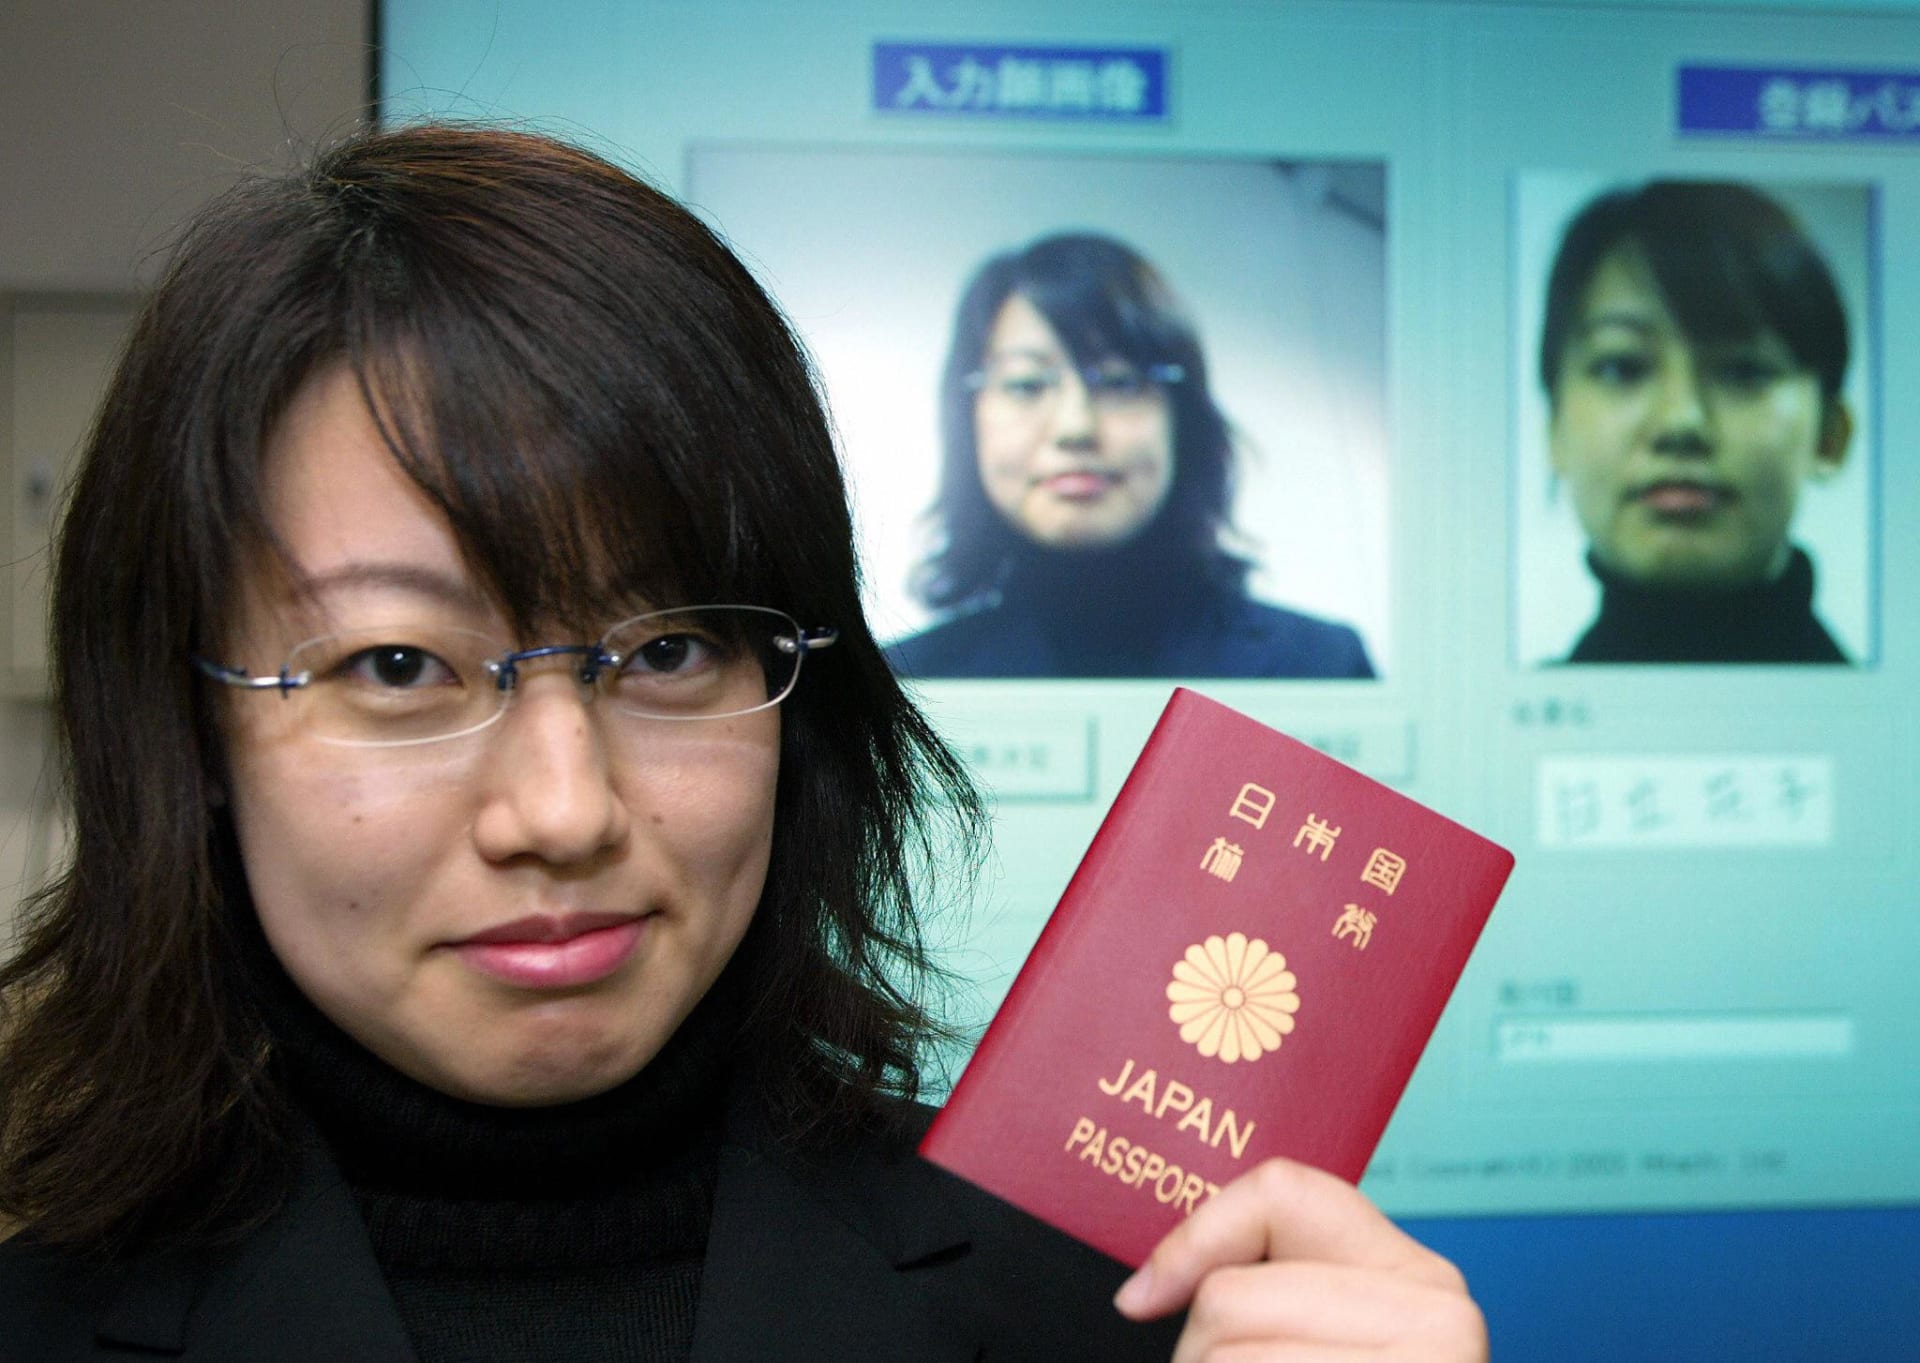 دولة آسيوية تتصدر قائمة أقوى جوازات السفر في العالم لعام 2023